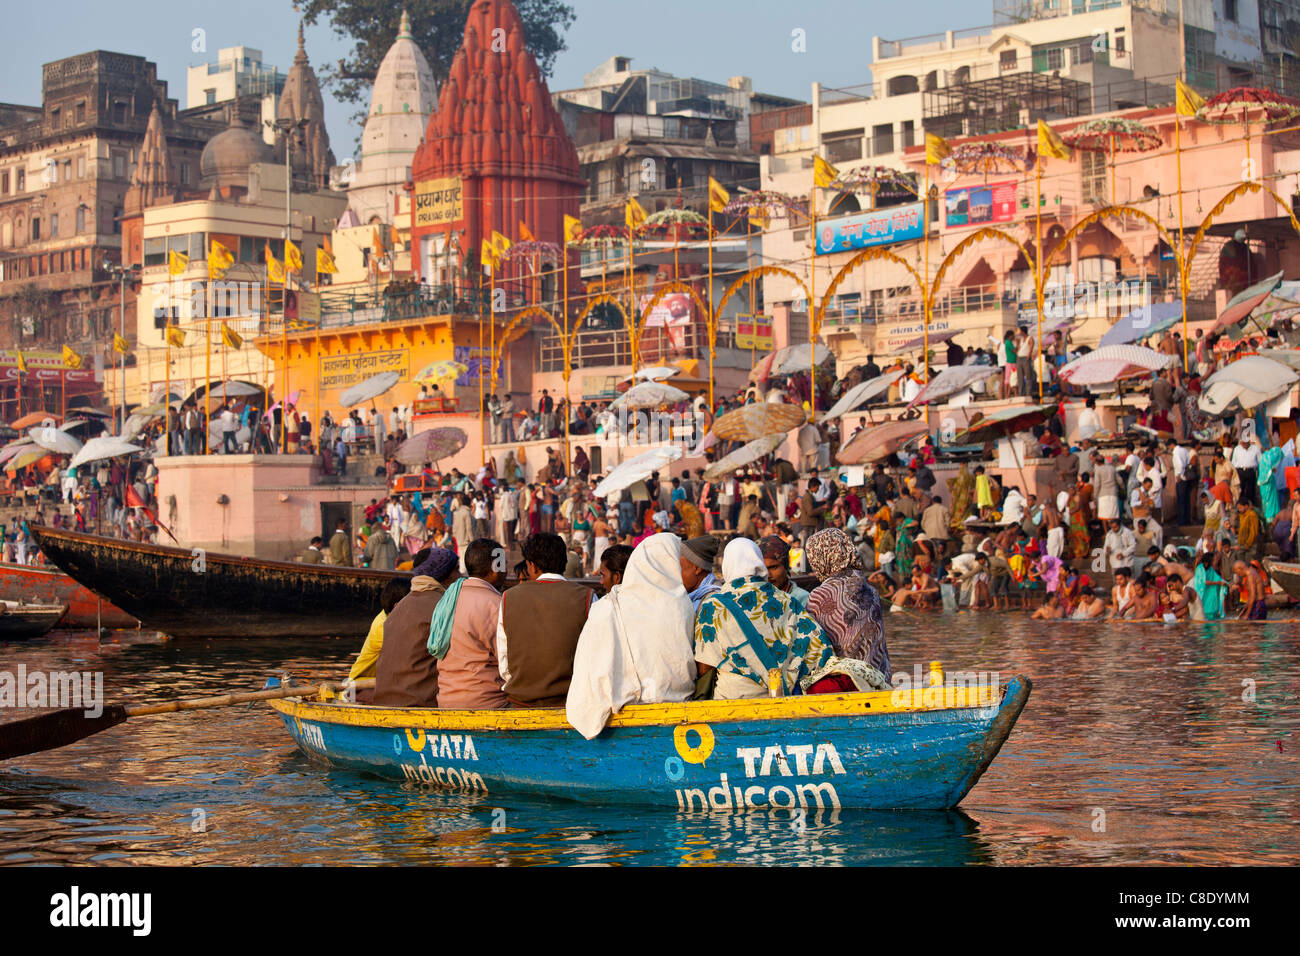 Los turistas en Tata Indicom publicidad en barco por el río Ganges en Varanasi, Benares, el norte de la India. Foto de stock